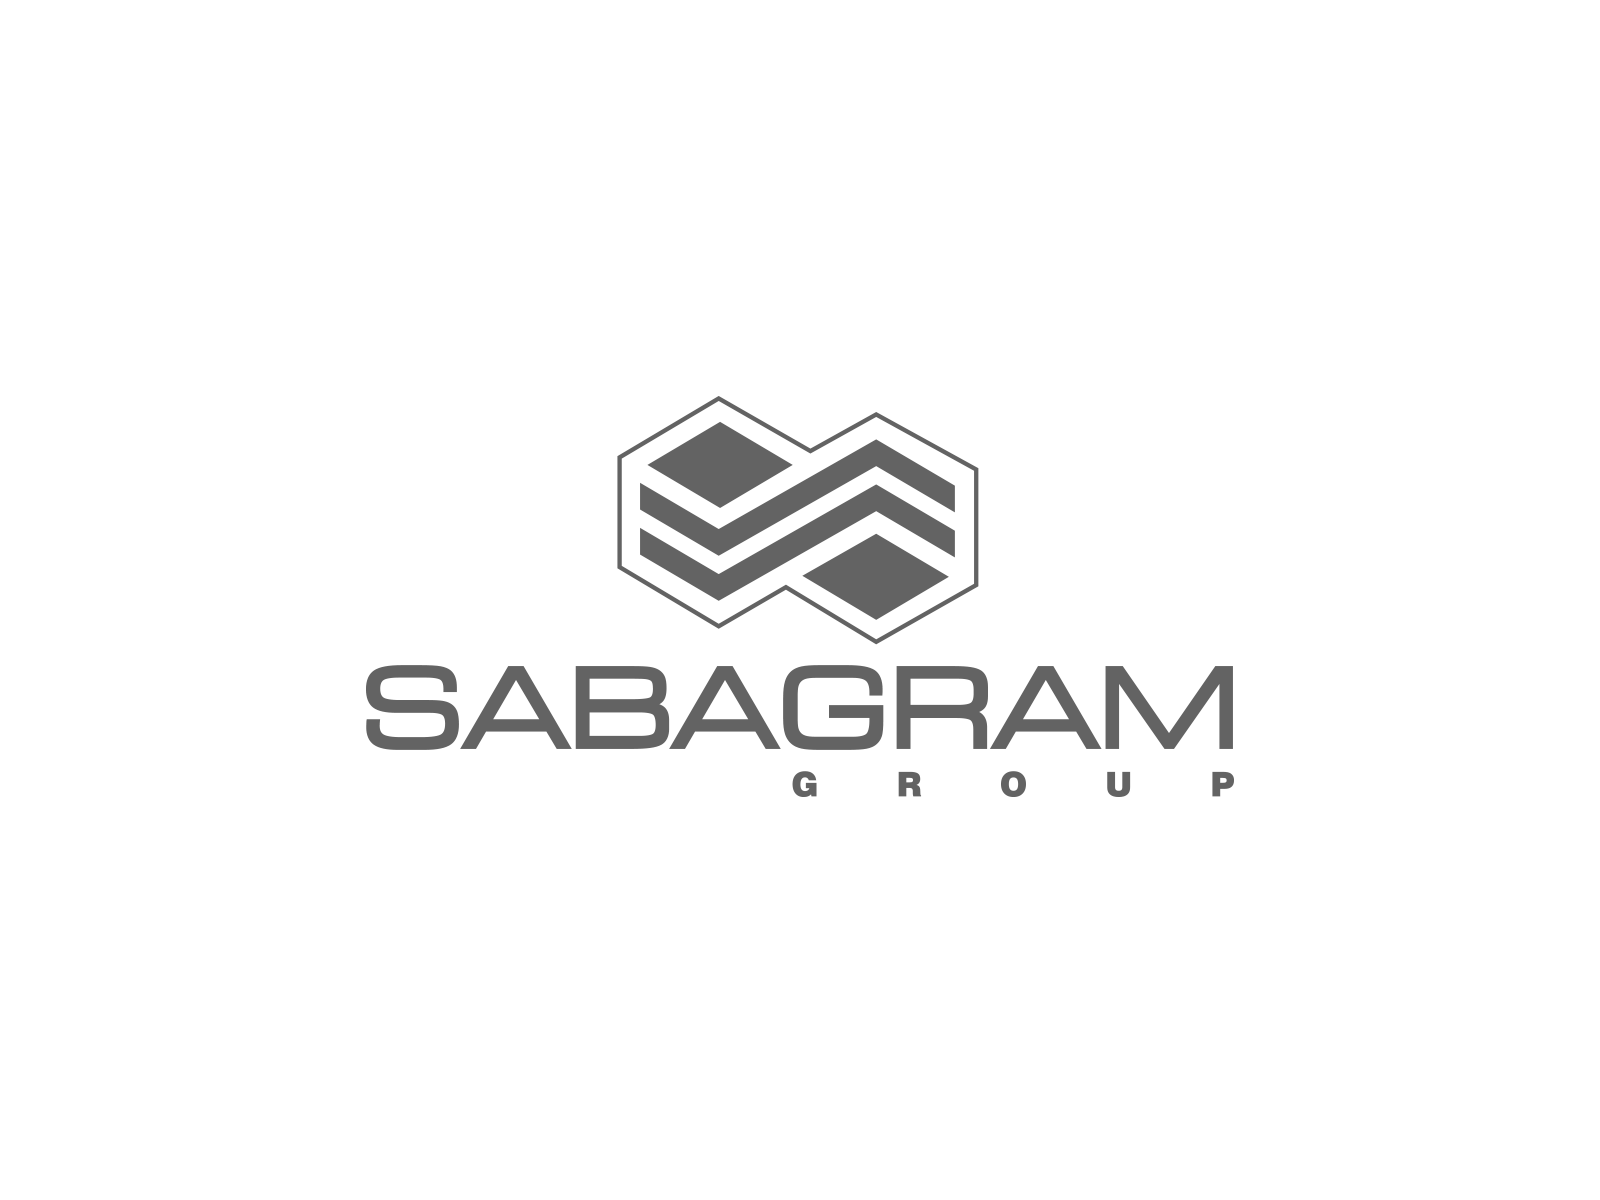 sabagramgroup